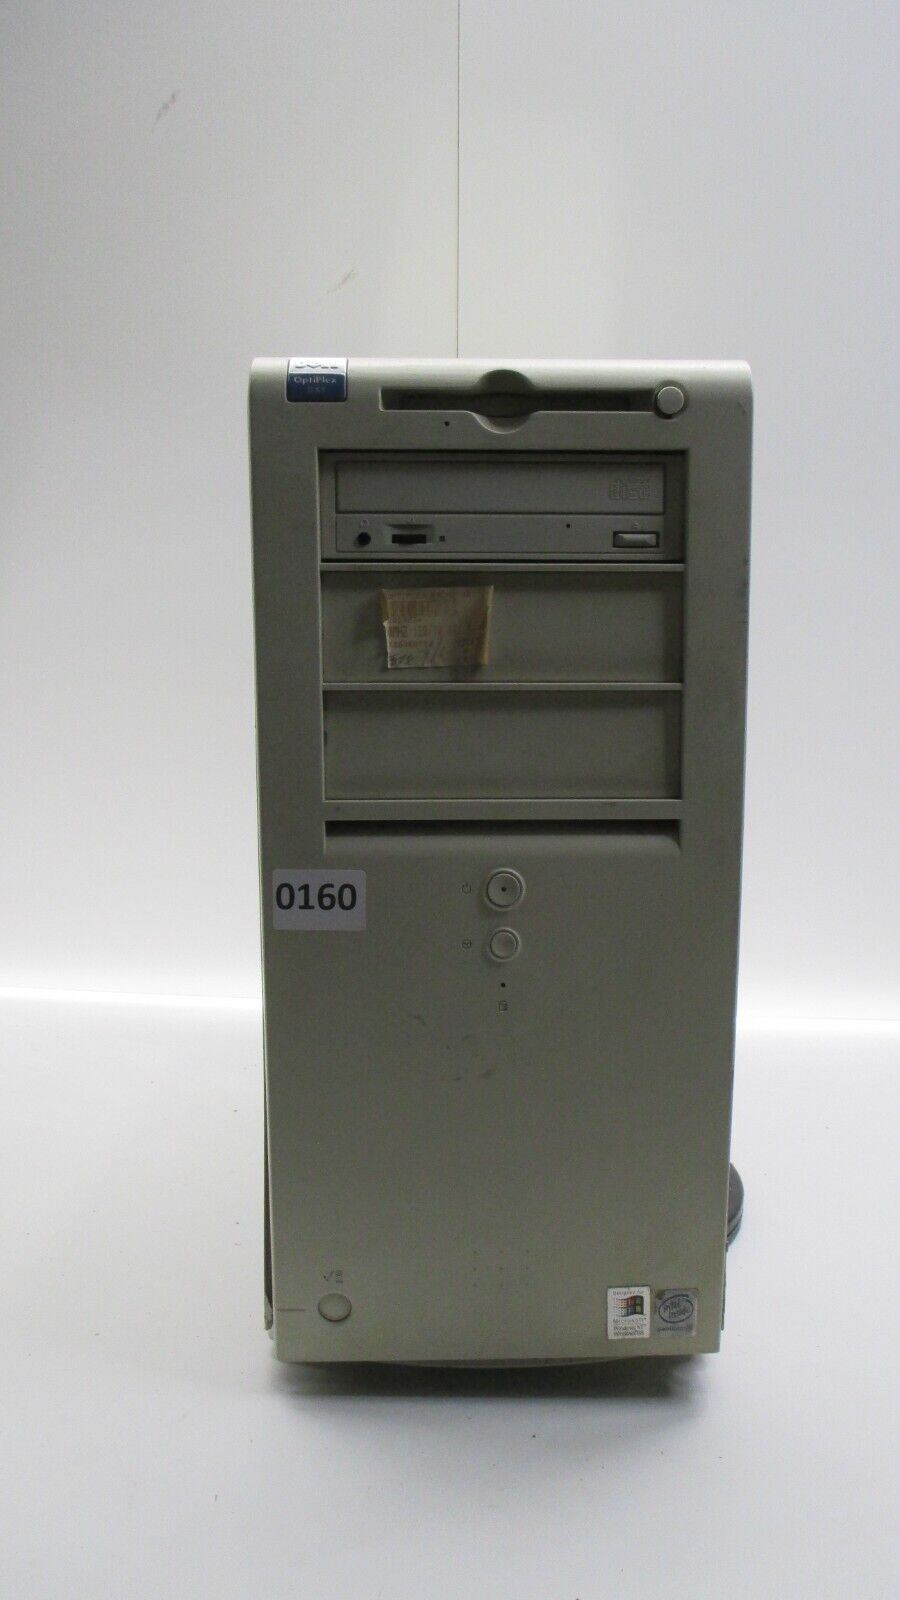 Dell OptiPlex GX1 Desktop Computer Intel Pentium 3 500MHz 64MB Ram No HDD